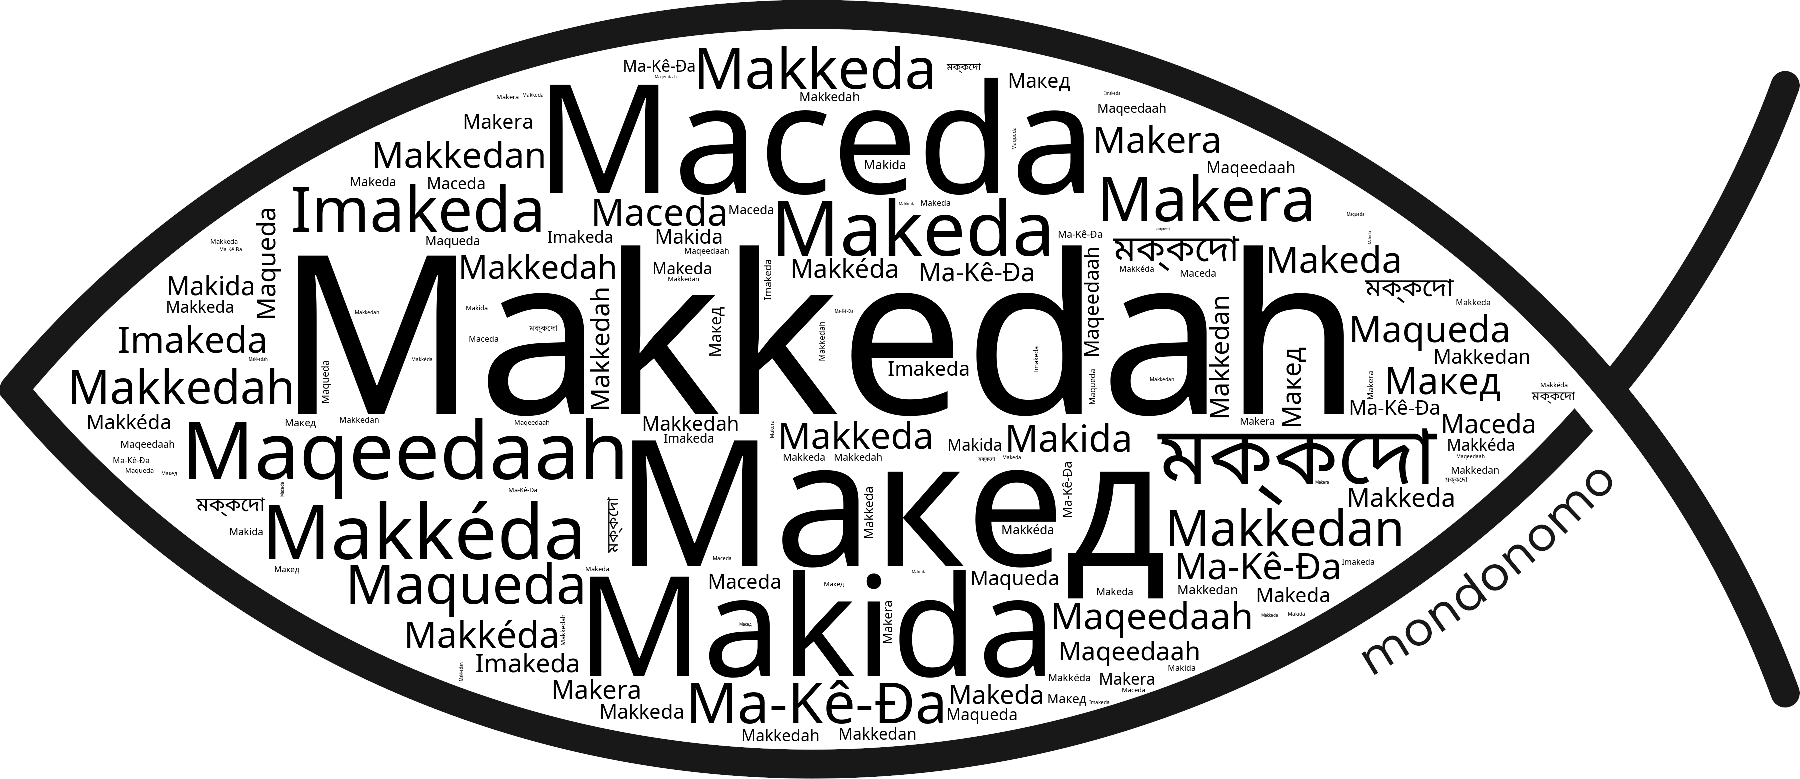 Name Makkedah in the world's Bibles